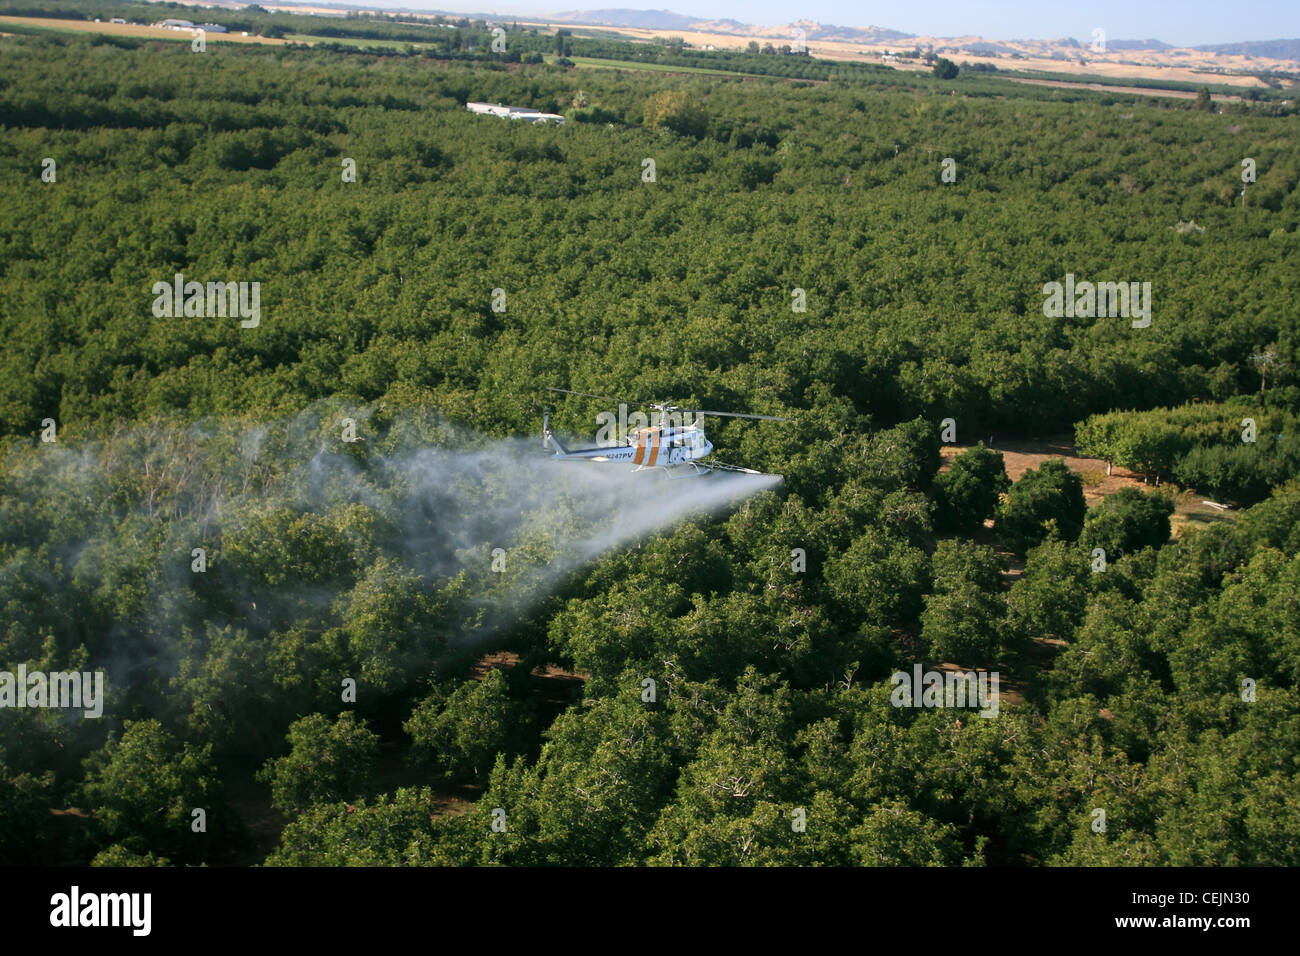 Agricoltura - Aerial l'applicazione di sostanze chimiche da un elicottero sopra un frutteto di noce in tarda estate / California, Stati Uniti d'America. Foto Stock